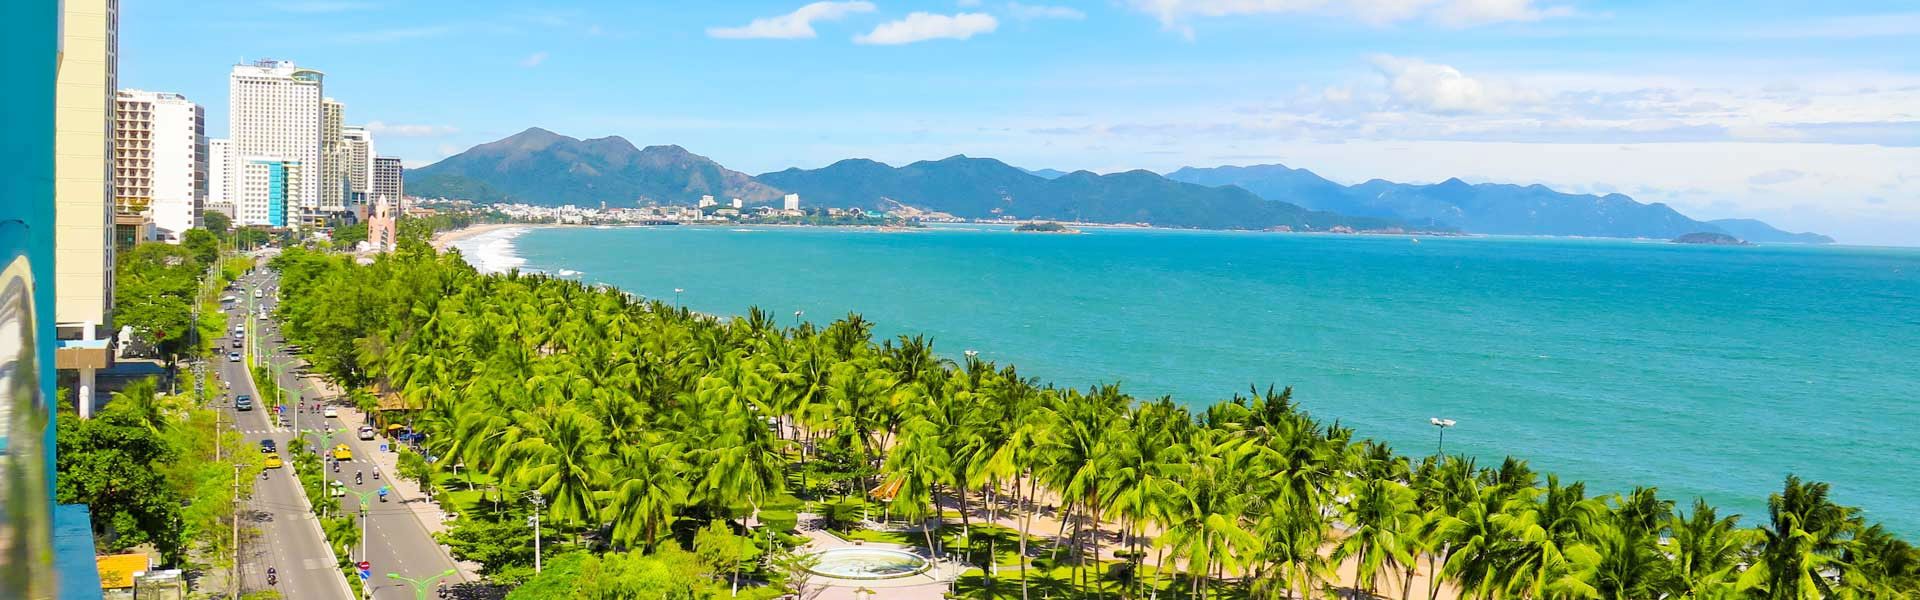 Tour du lịch khách đoàn Nha Trang - Dốc Lết - Suối Hoa Lan 3 ngày 3 đêm giá rẻ